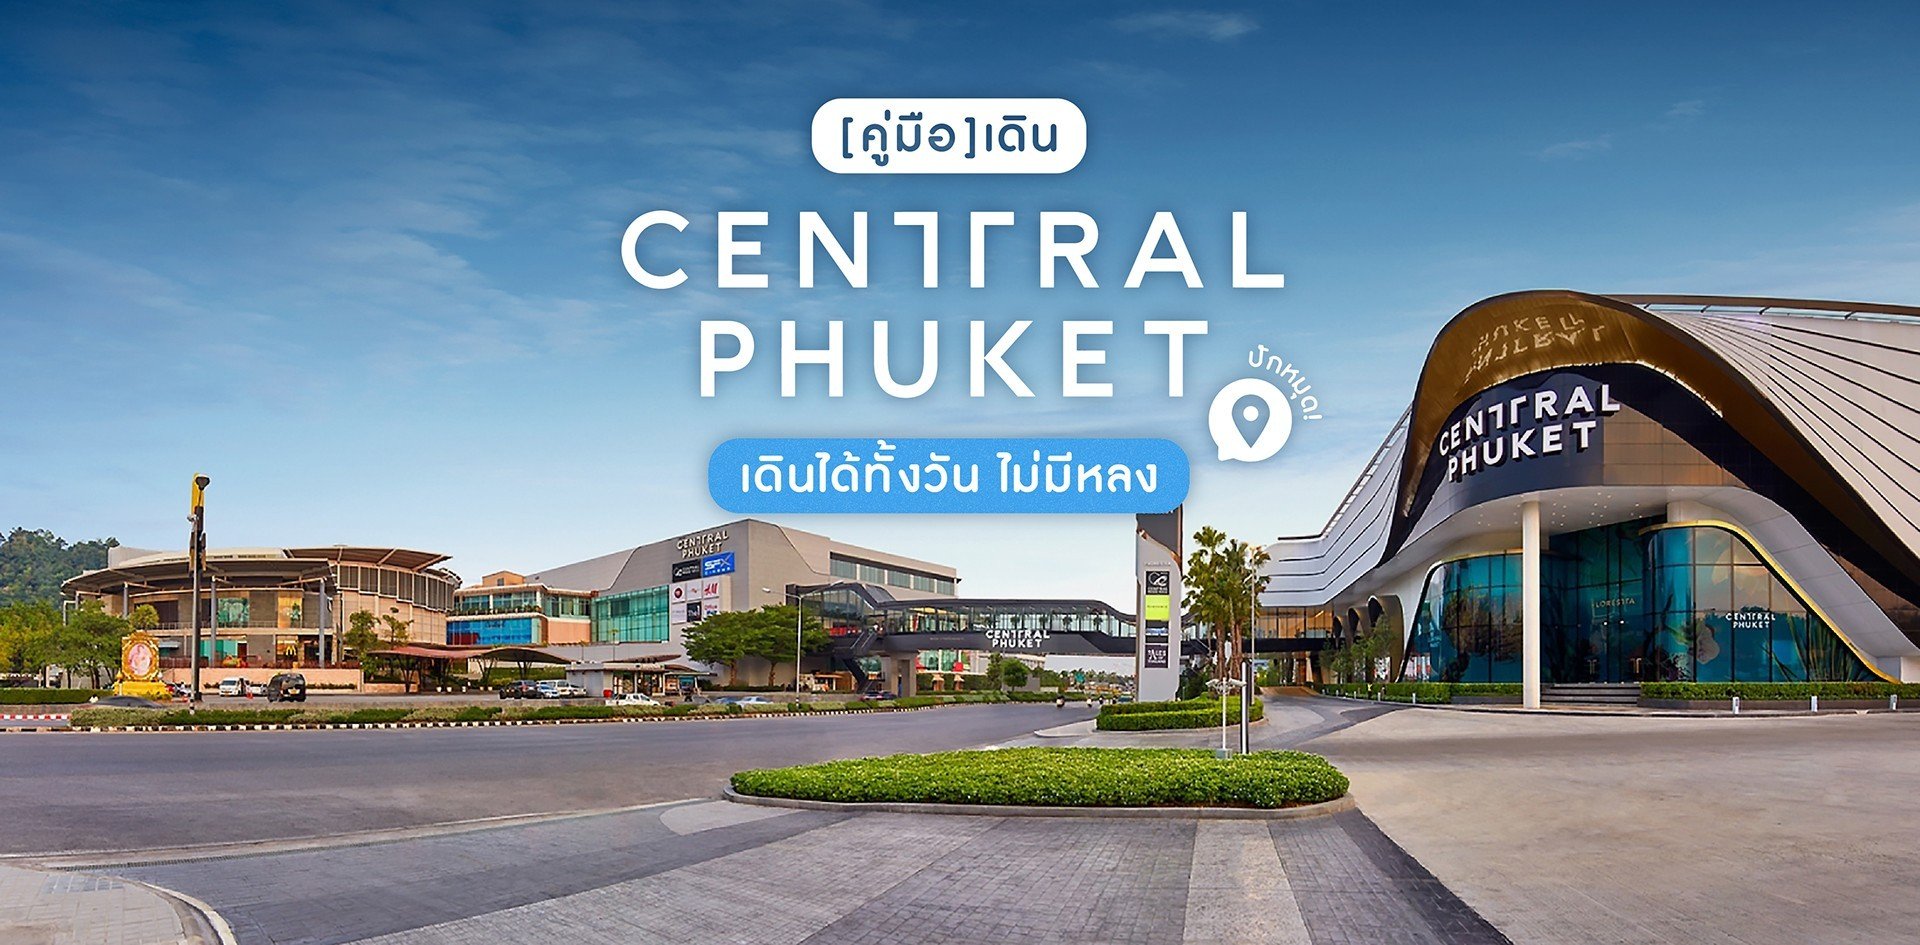 Central Festival Phuket 